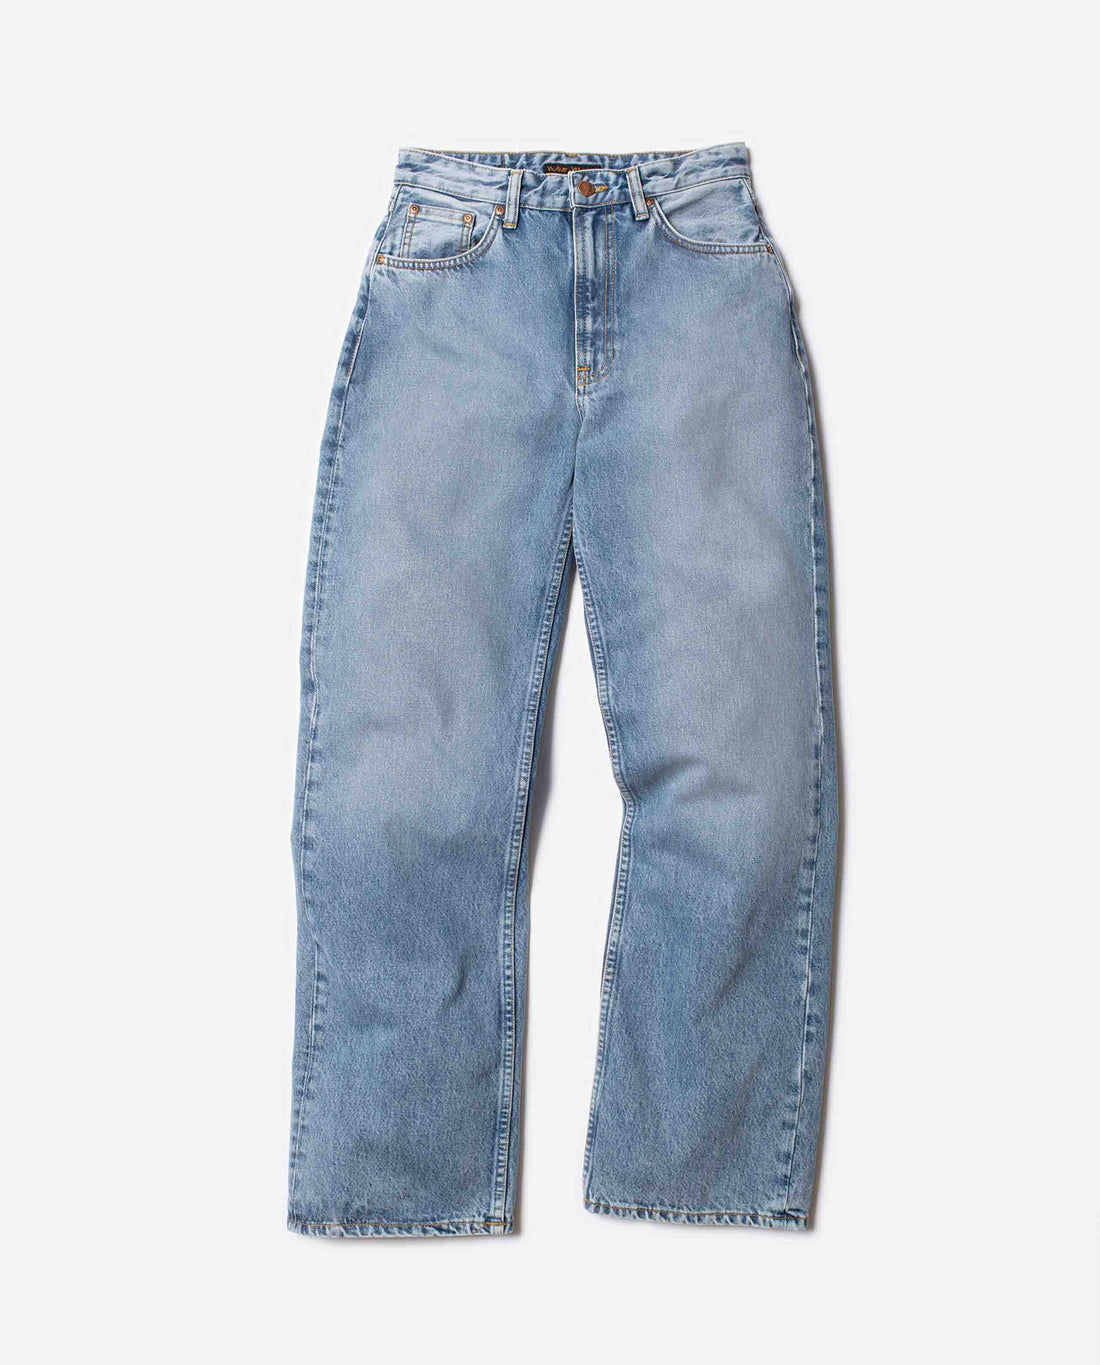 Marché Commun jean ample en coton bio nudie jeans